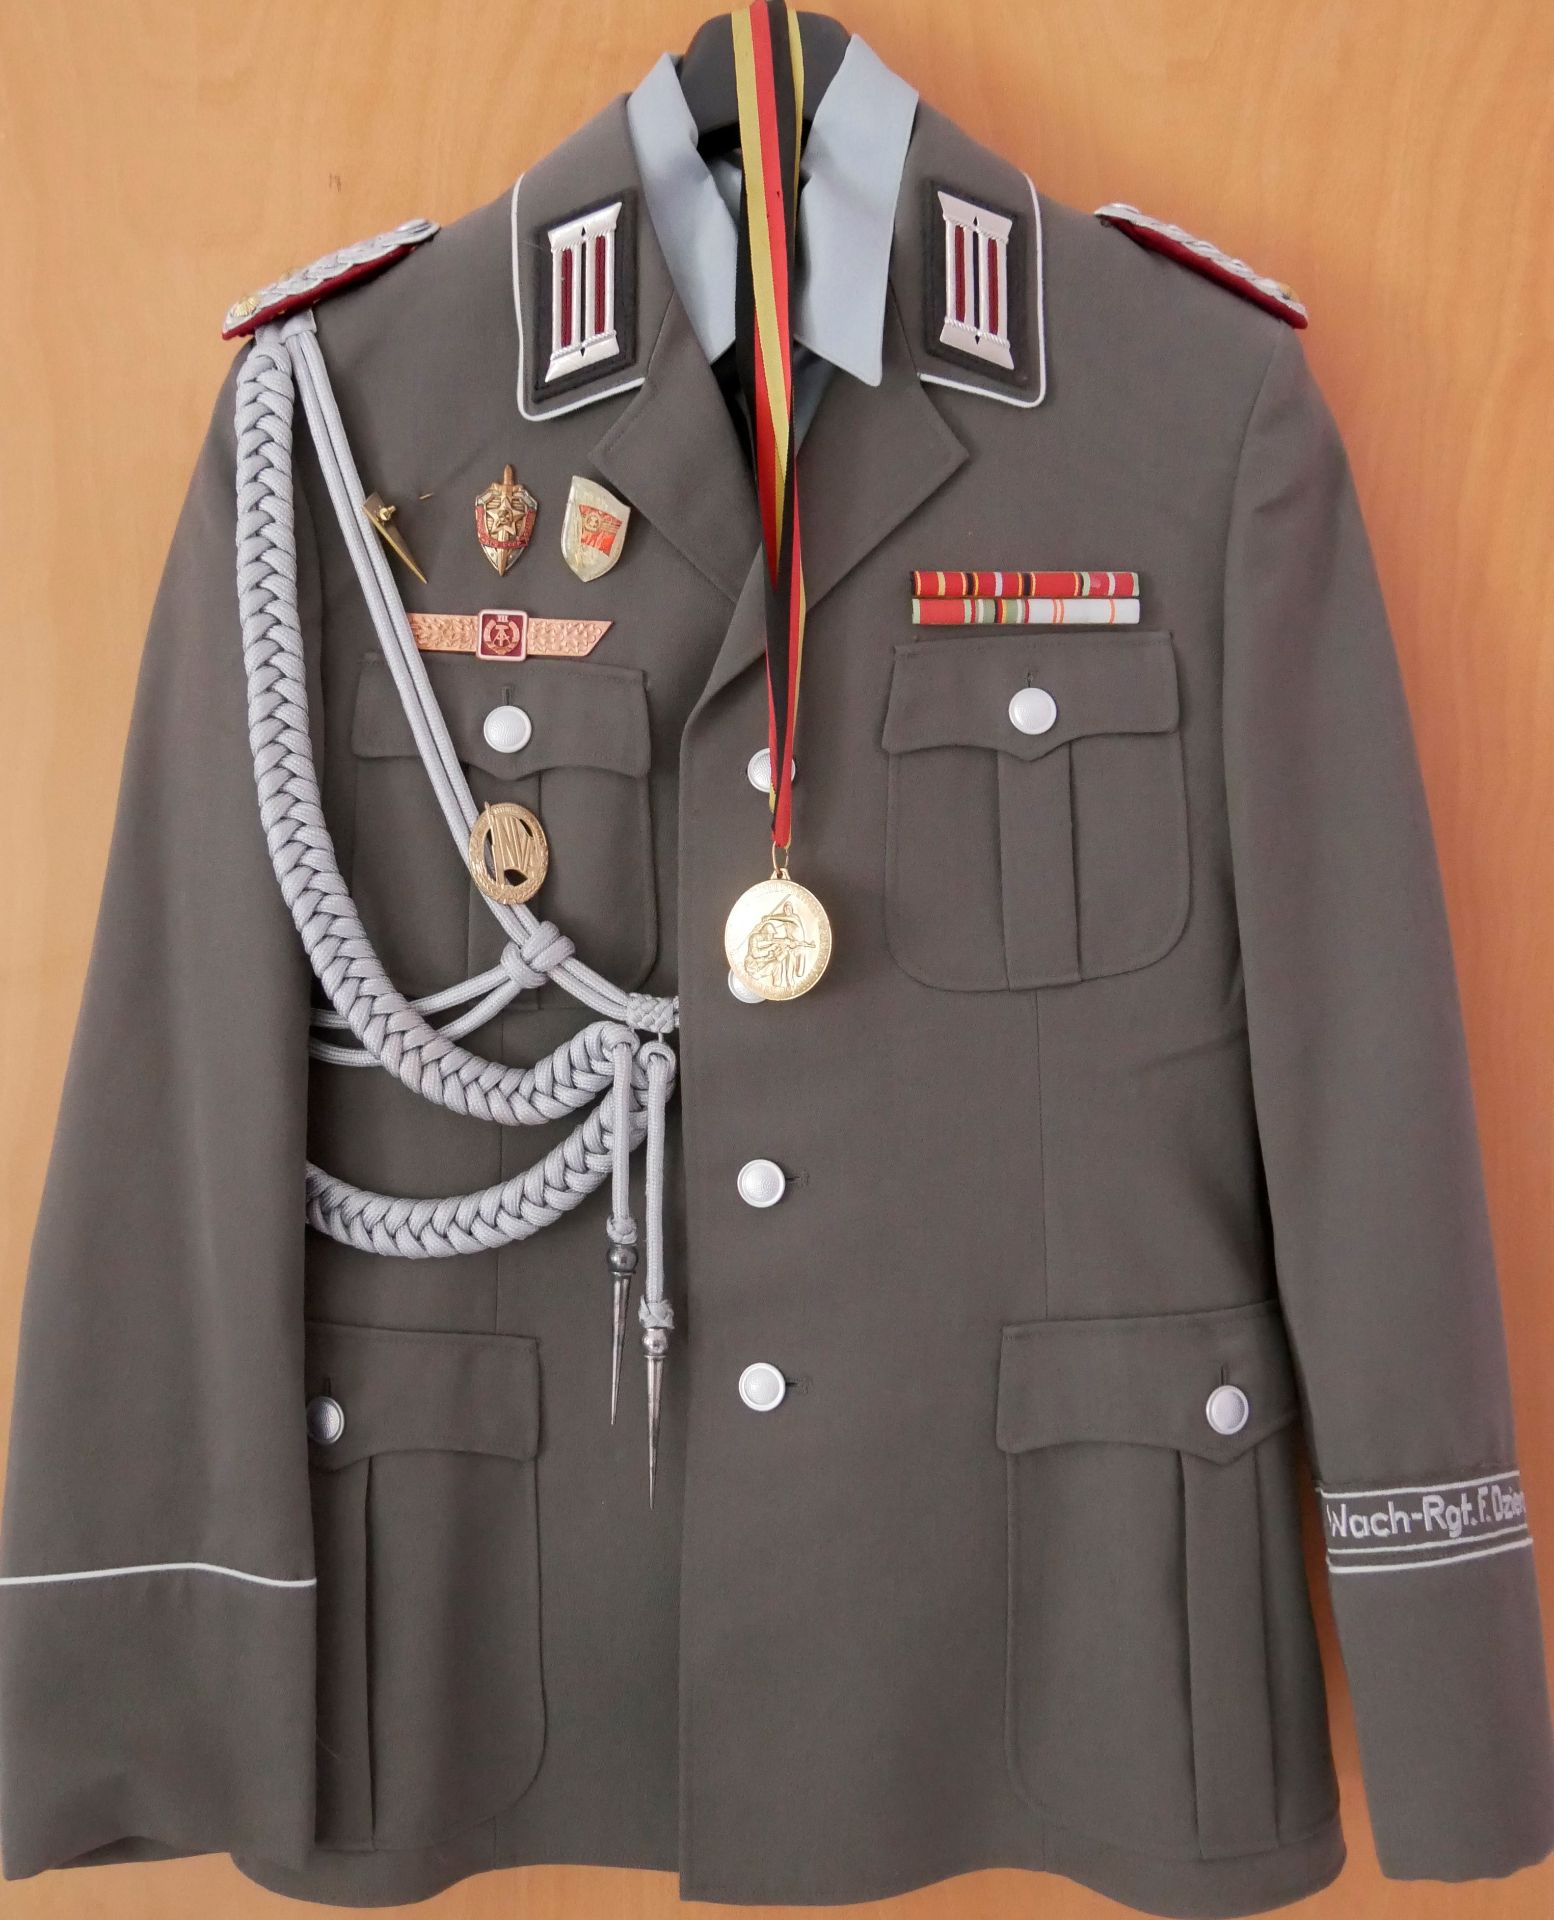 Aus Sammelauflösung! DDR Uniform Jacke mit Effekten, Ordenspangen, Orden sowie eine Medaille "